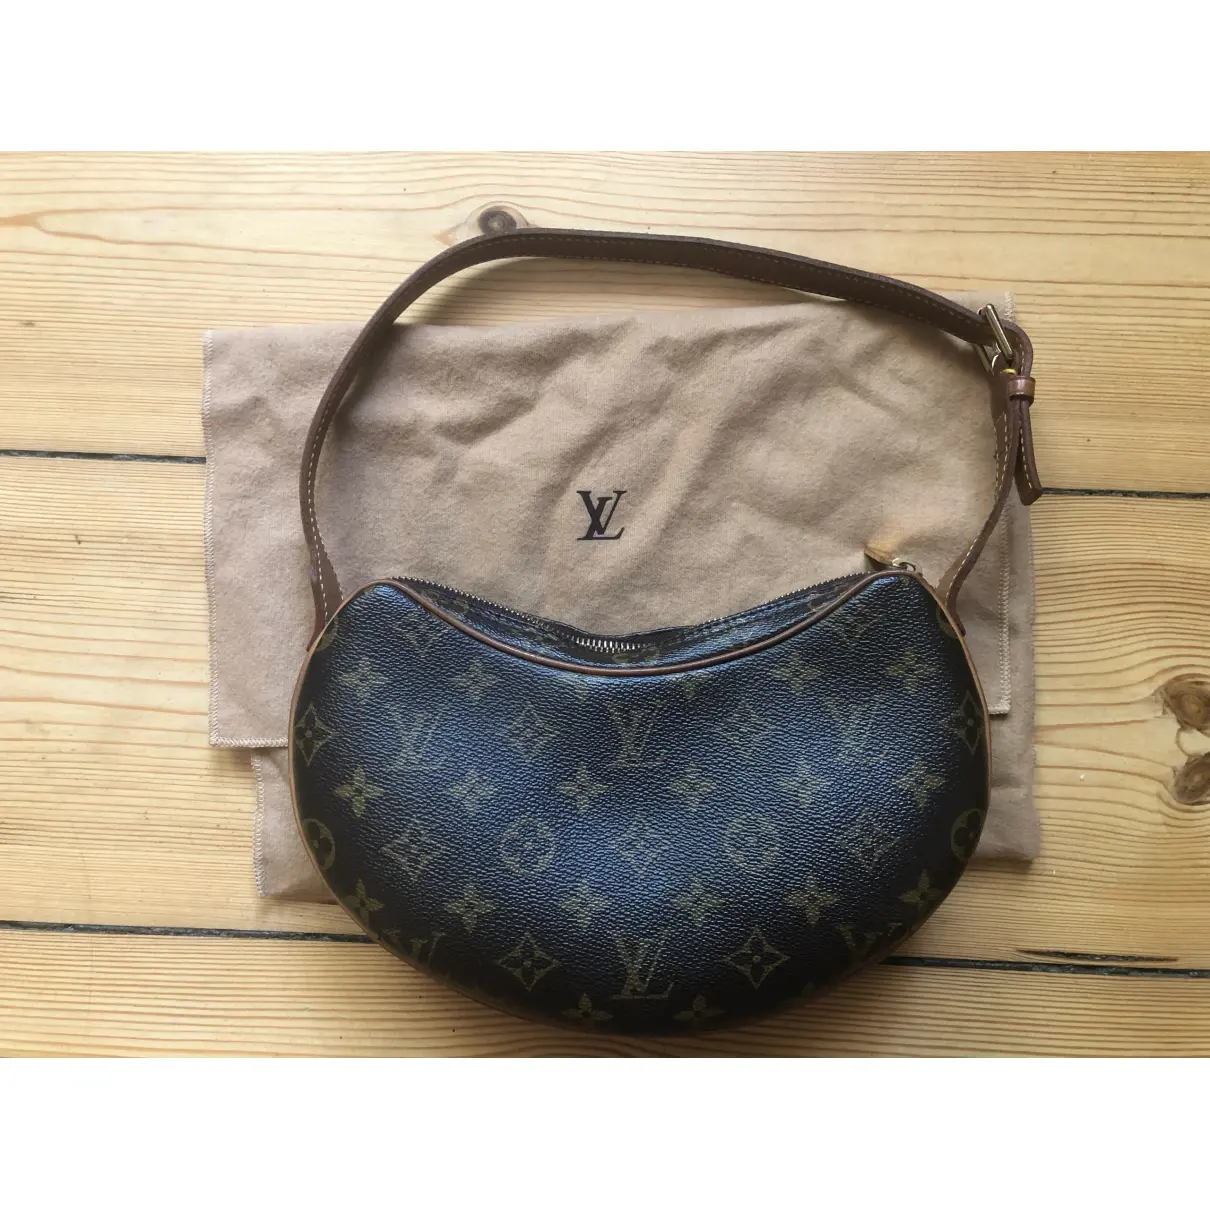 Buy Louis Vuitton Croissant cloth handbag online